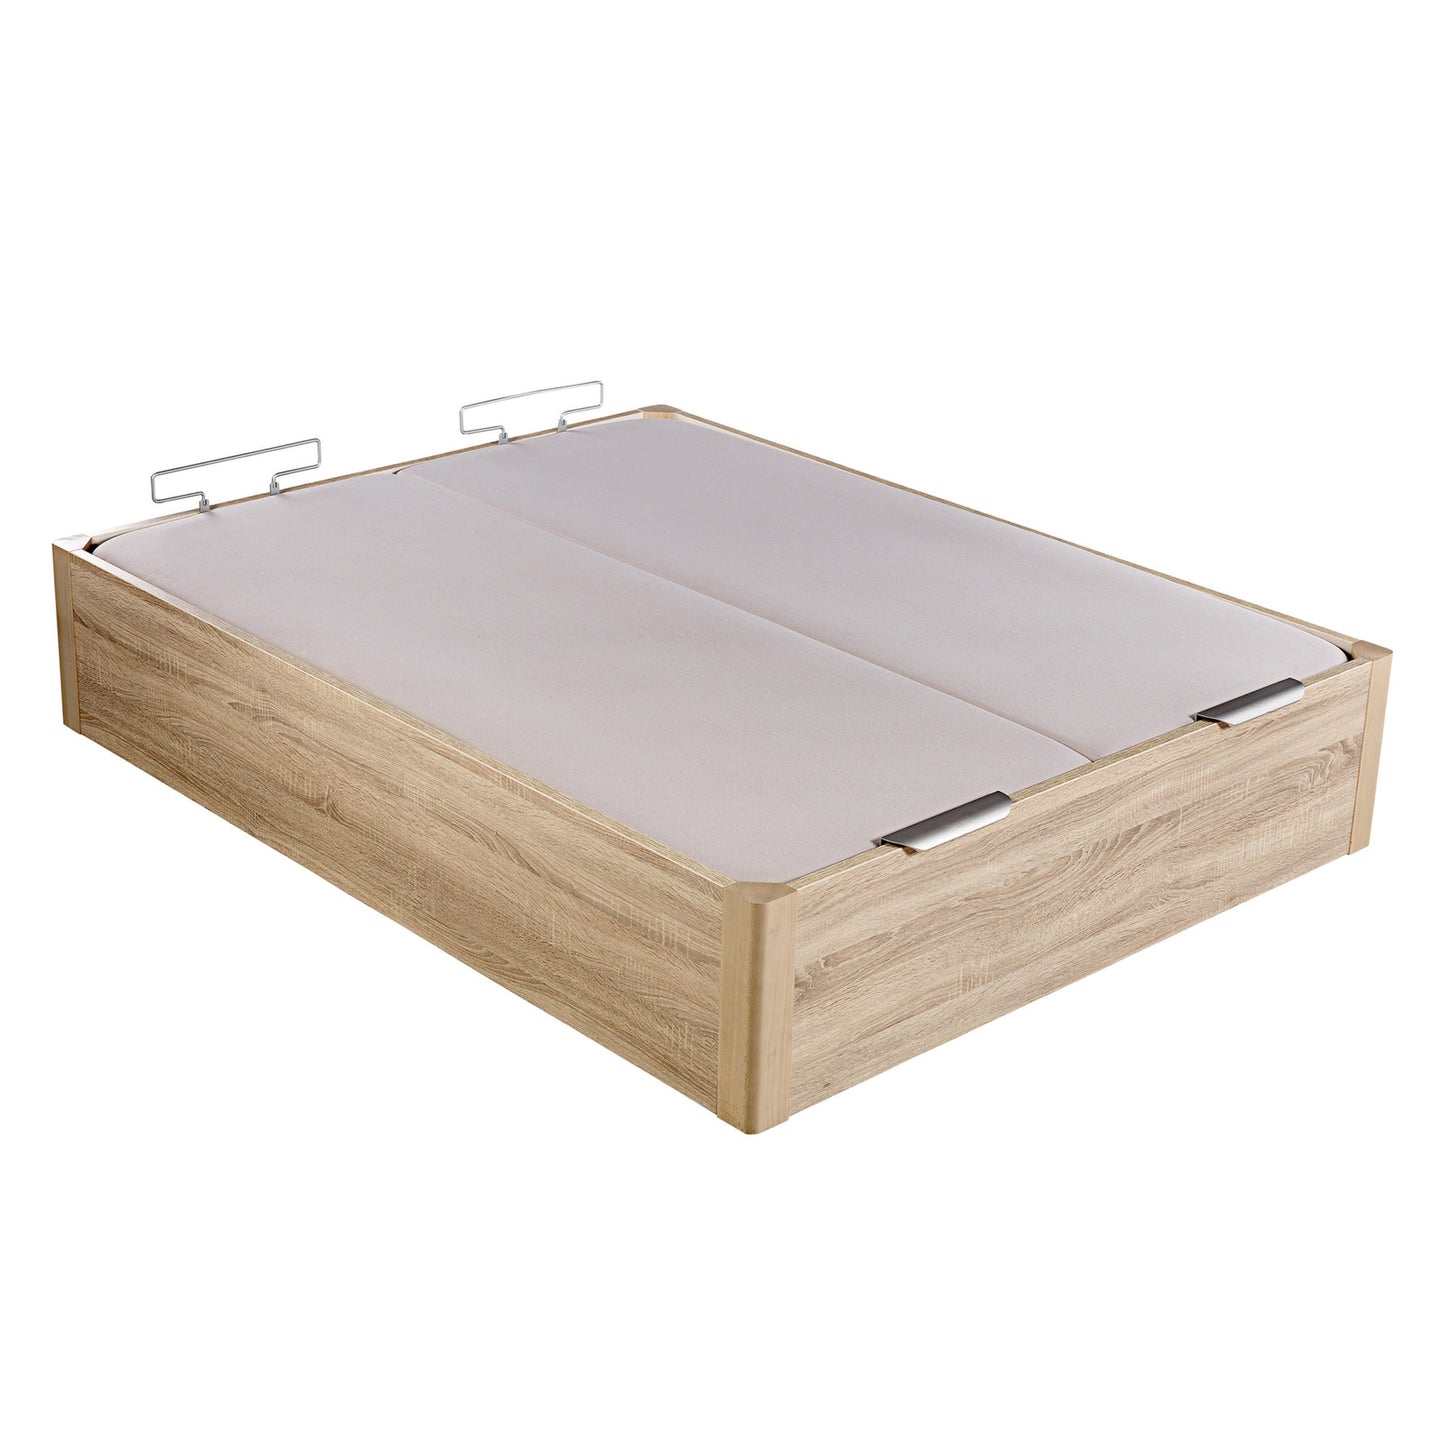 Canapé abatible de madera de alta capacidad tapa doble de color natural - DESIGN - 180x210